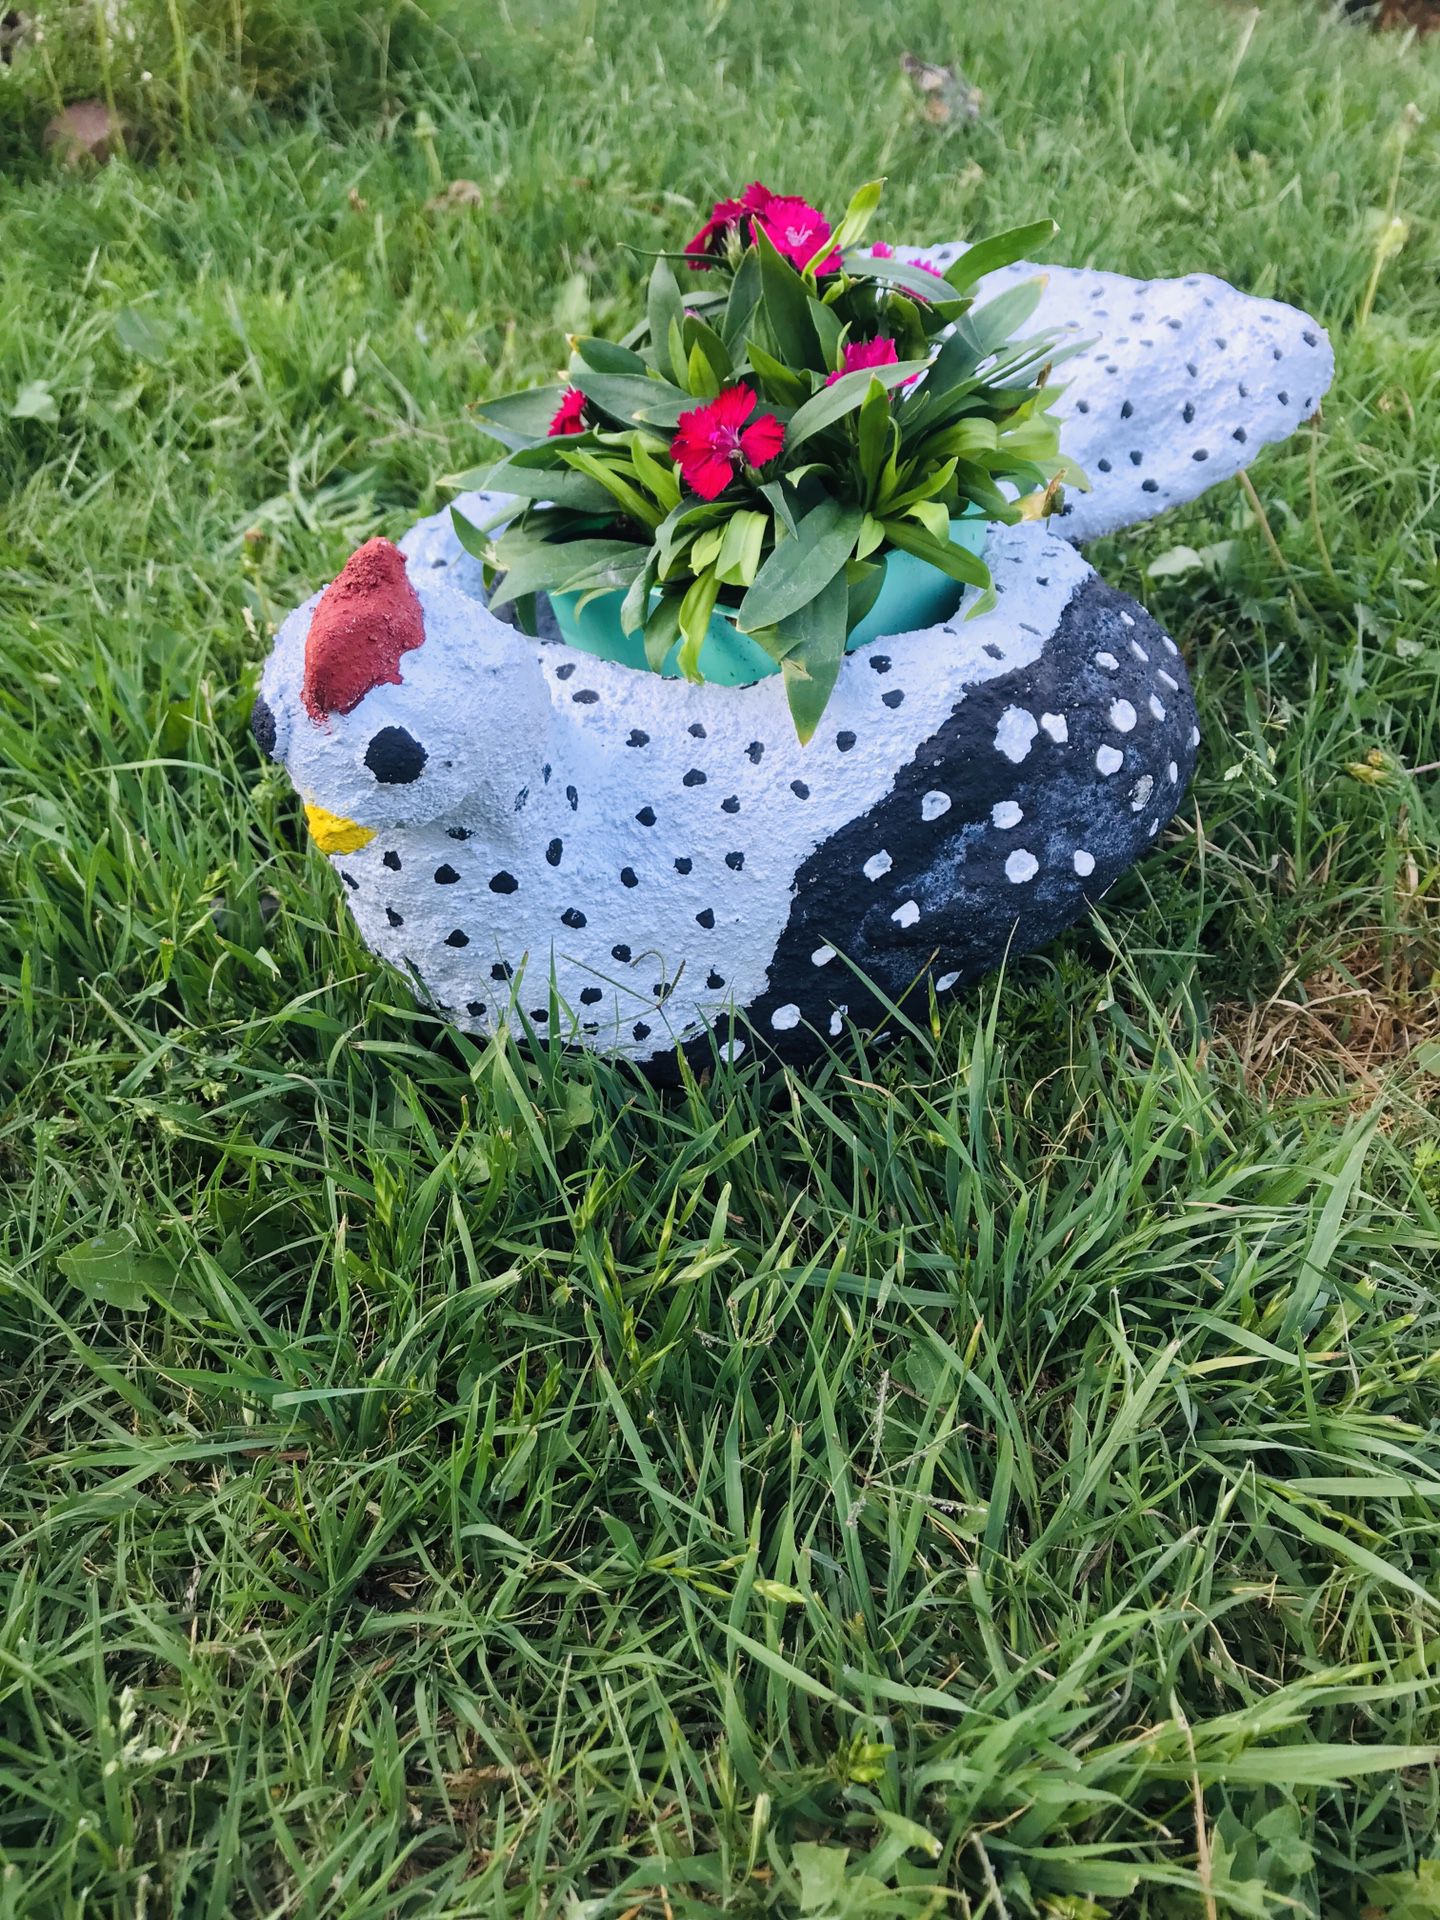 Chicken ceramic flower pot